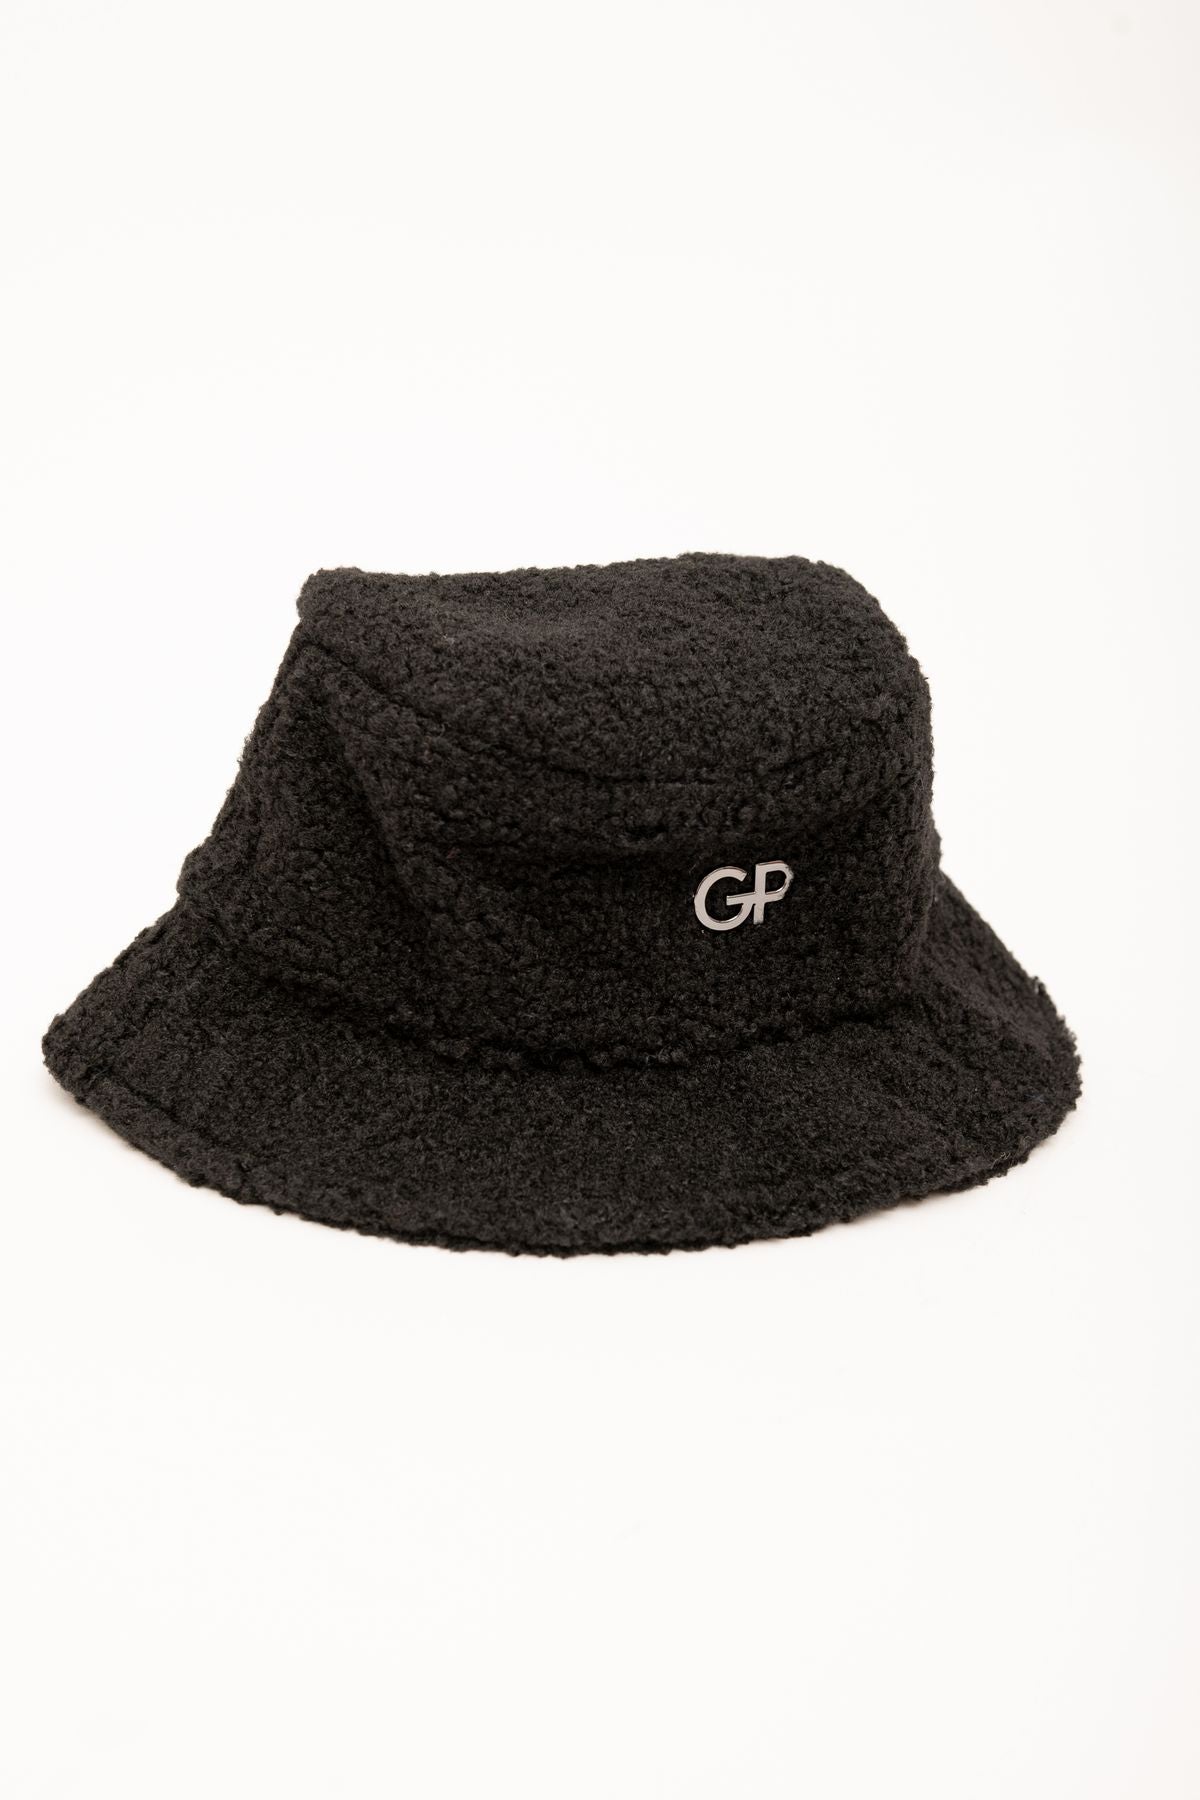 gbadp5012 - cappello - GAELLE PARIS